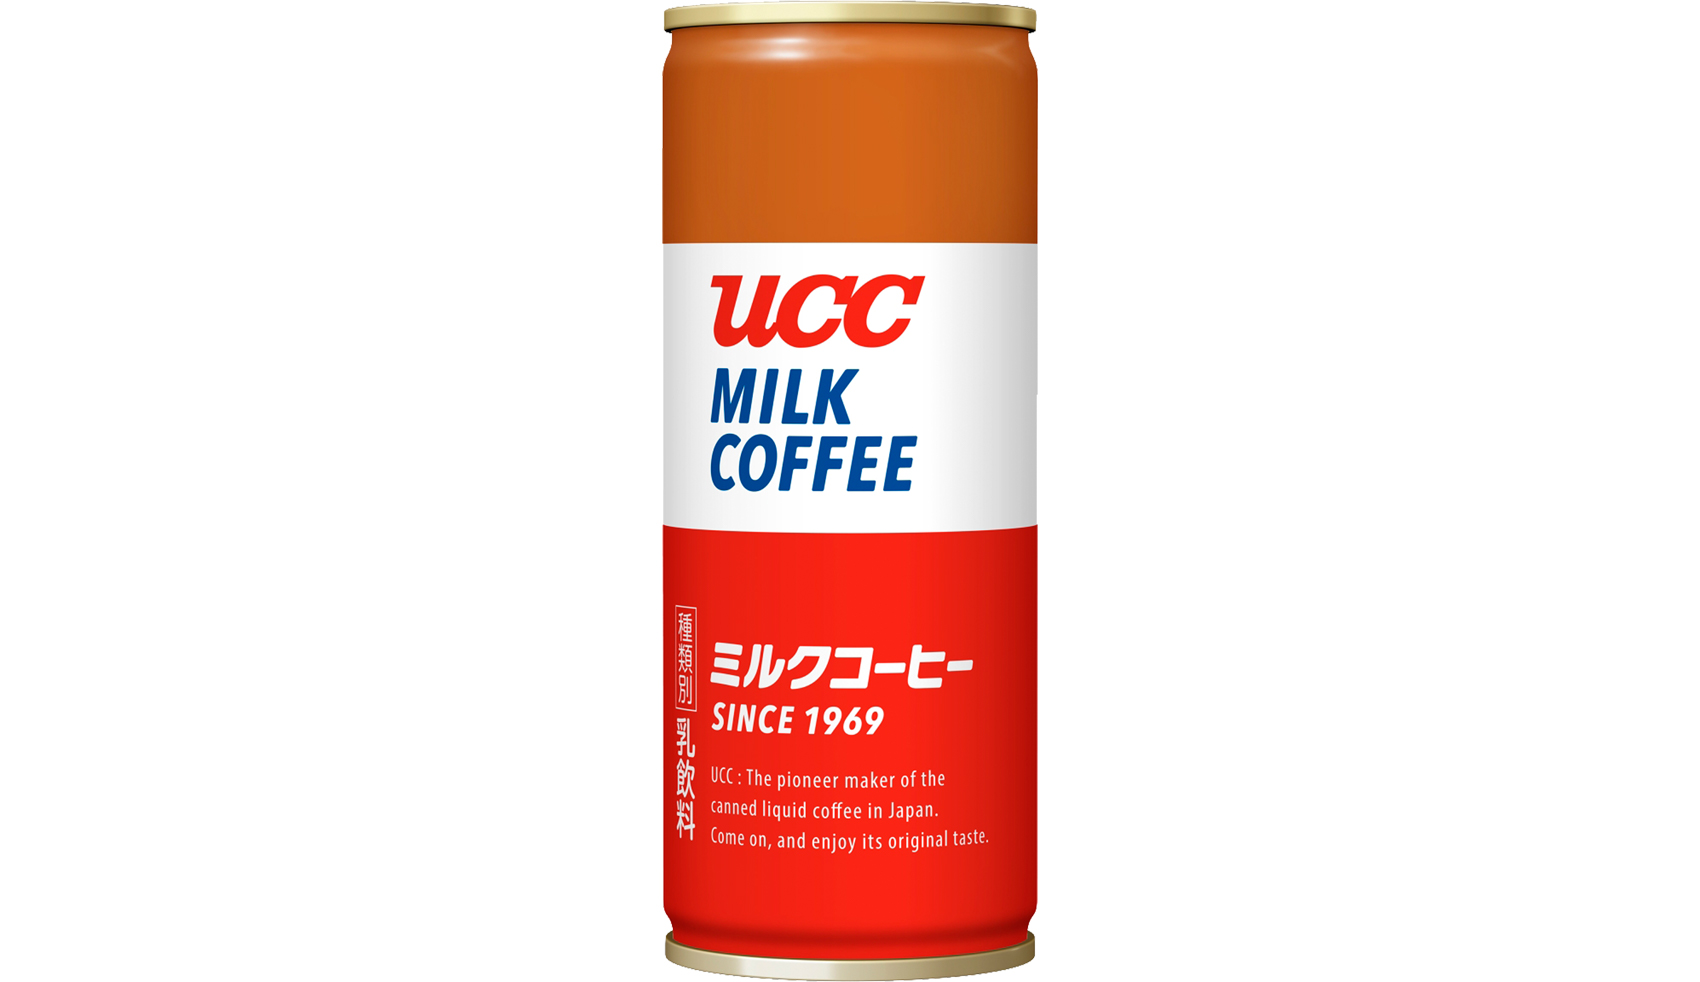 ニュースリリース ギネス世界記録 に認定された Ucc ミルクコーヒー が誕生50周年を記念して 4月1日 月 から全国でリニューアル発売 新たにカフェインレスコーヒーもラインアップ ー缶コーヒーマニアー 缶 コーヒーマニア